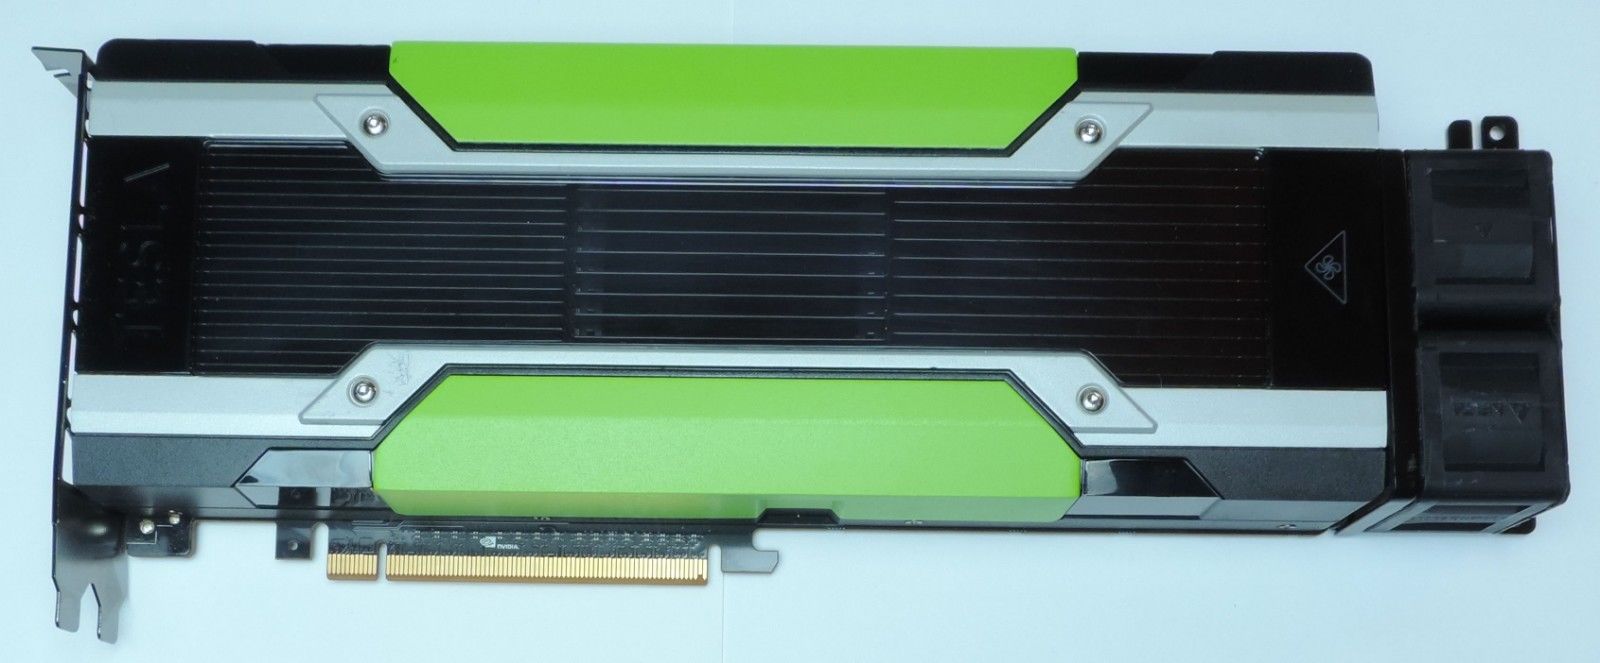 Nvidia Tesla M60 GPU Accelerator 16GB GDDR5 PCI-e Dell VWYHN 900-2G402-0120-010